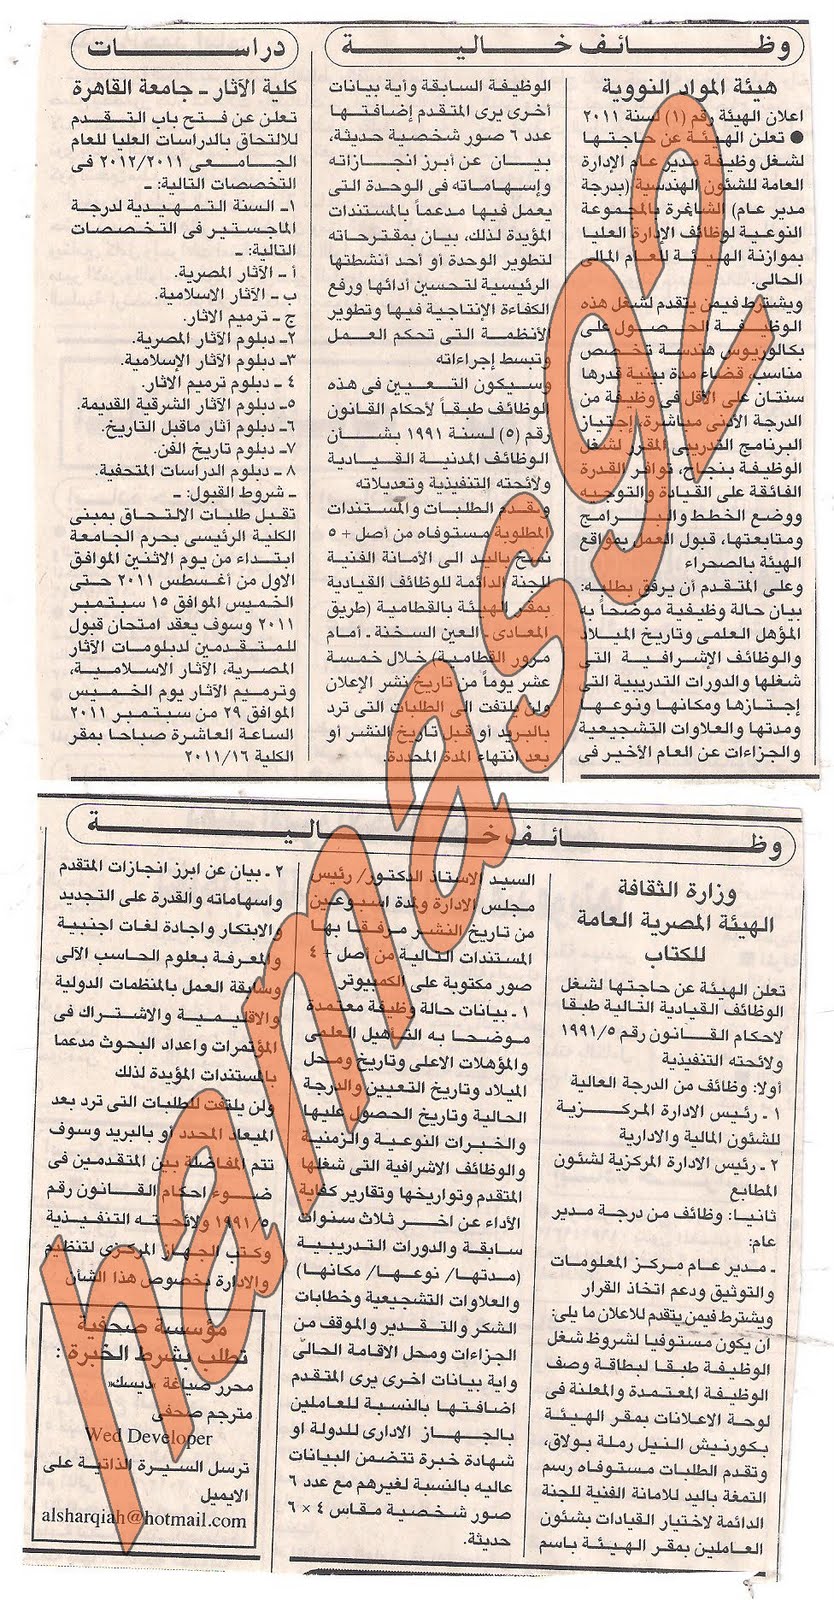 وظائف خالية من جريدة الاهرام الاربعاء 27 يوليو 2011 Picture+002